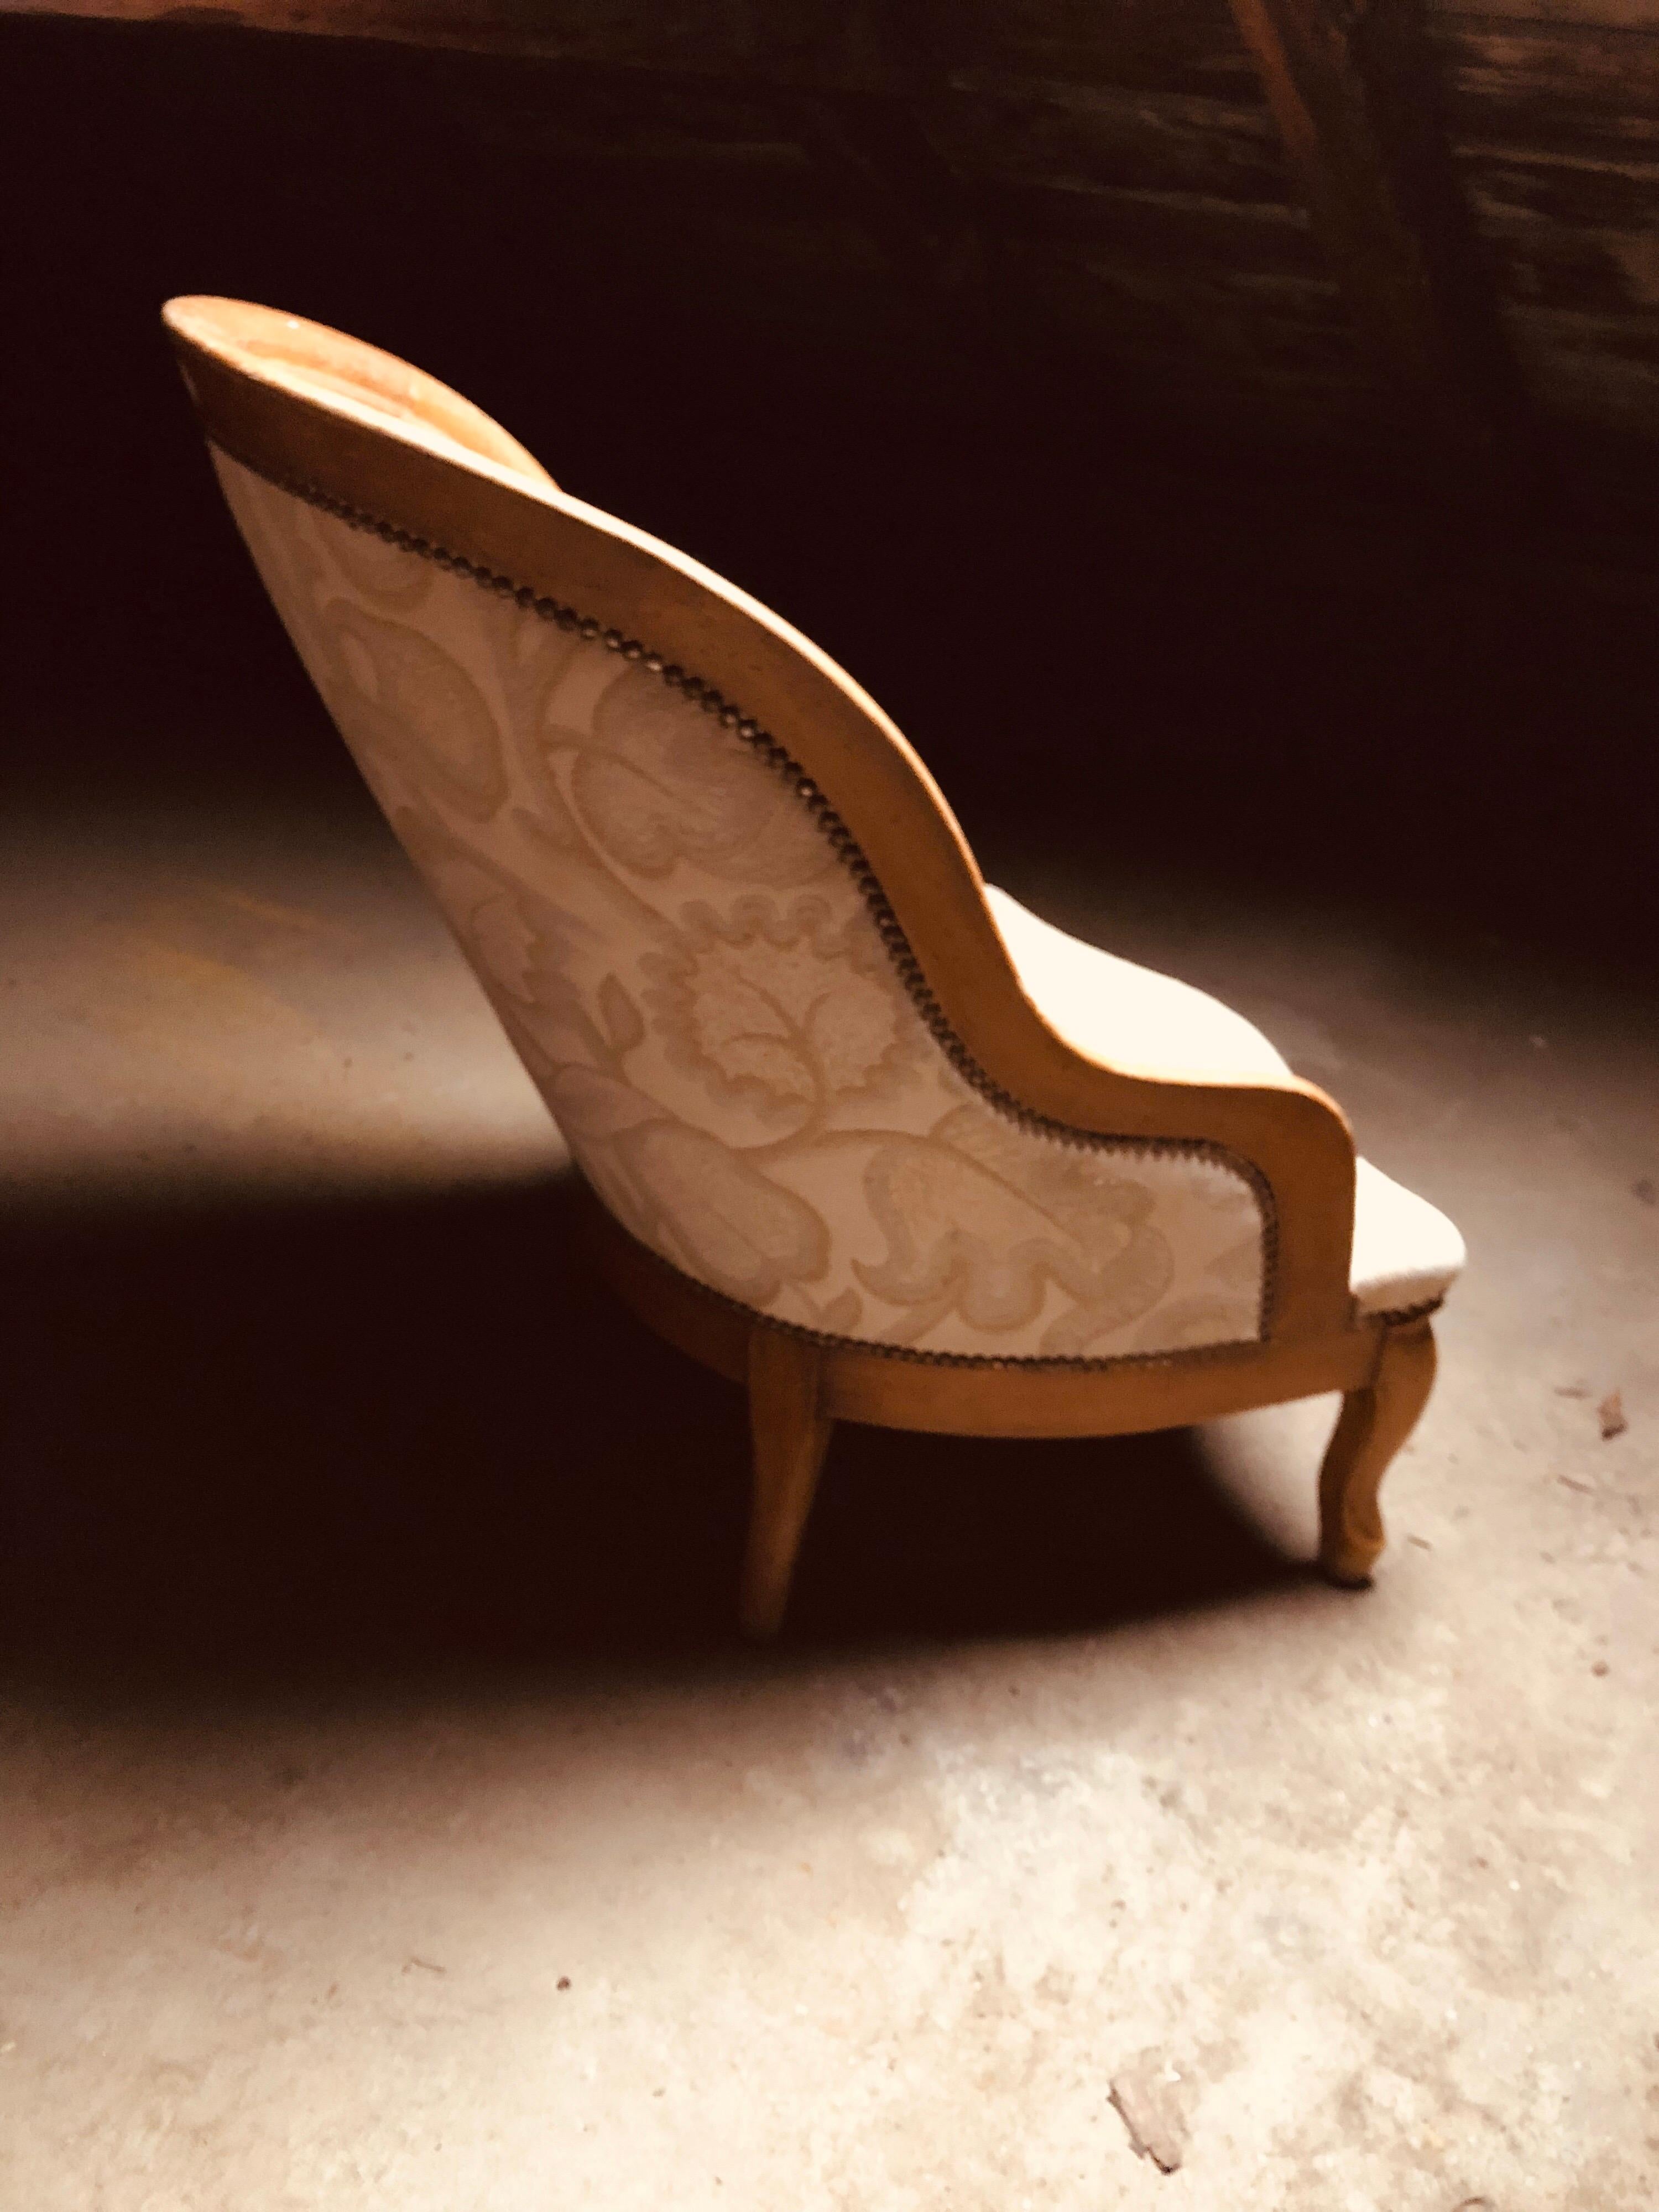 Französischer eleganter Sessel mit Nussbaumgestell aus dem späten 19. Jahrhundert.